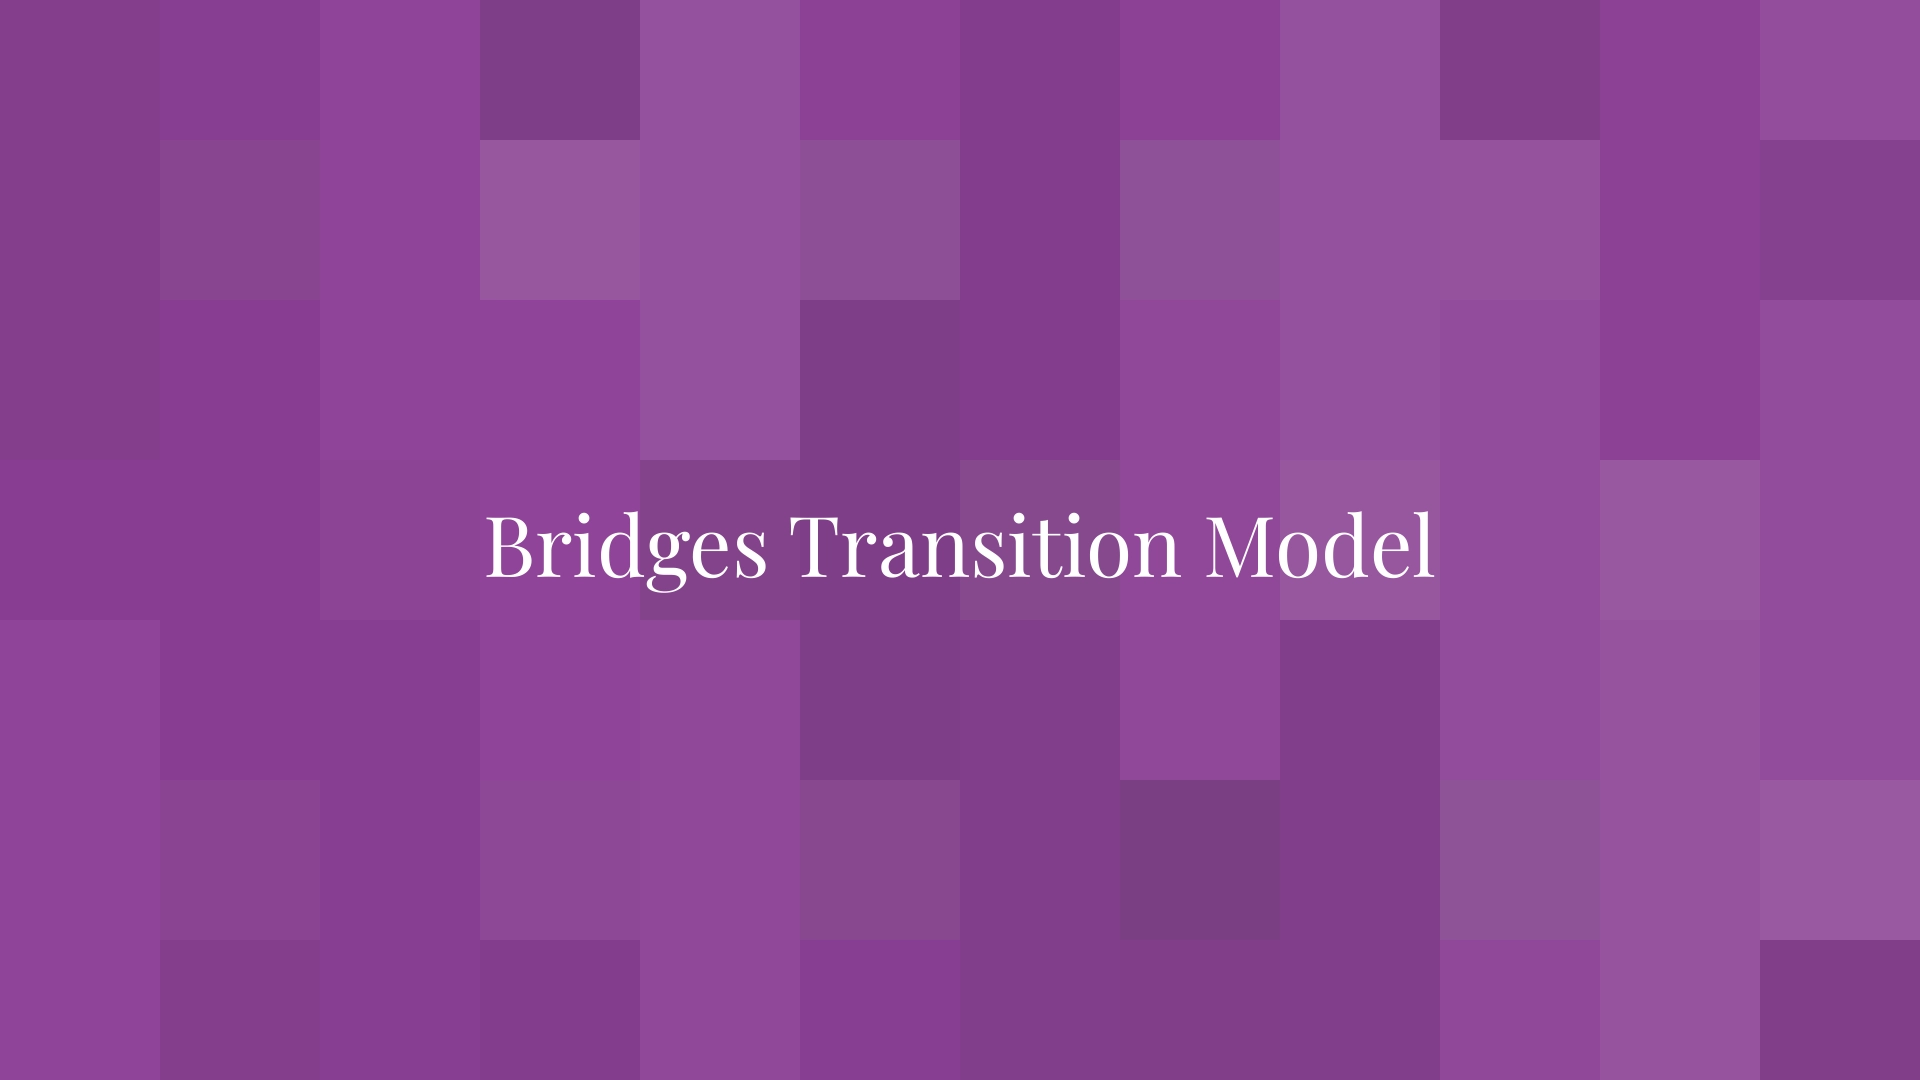 Modelo de transición de puentes